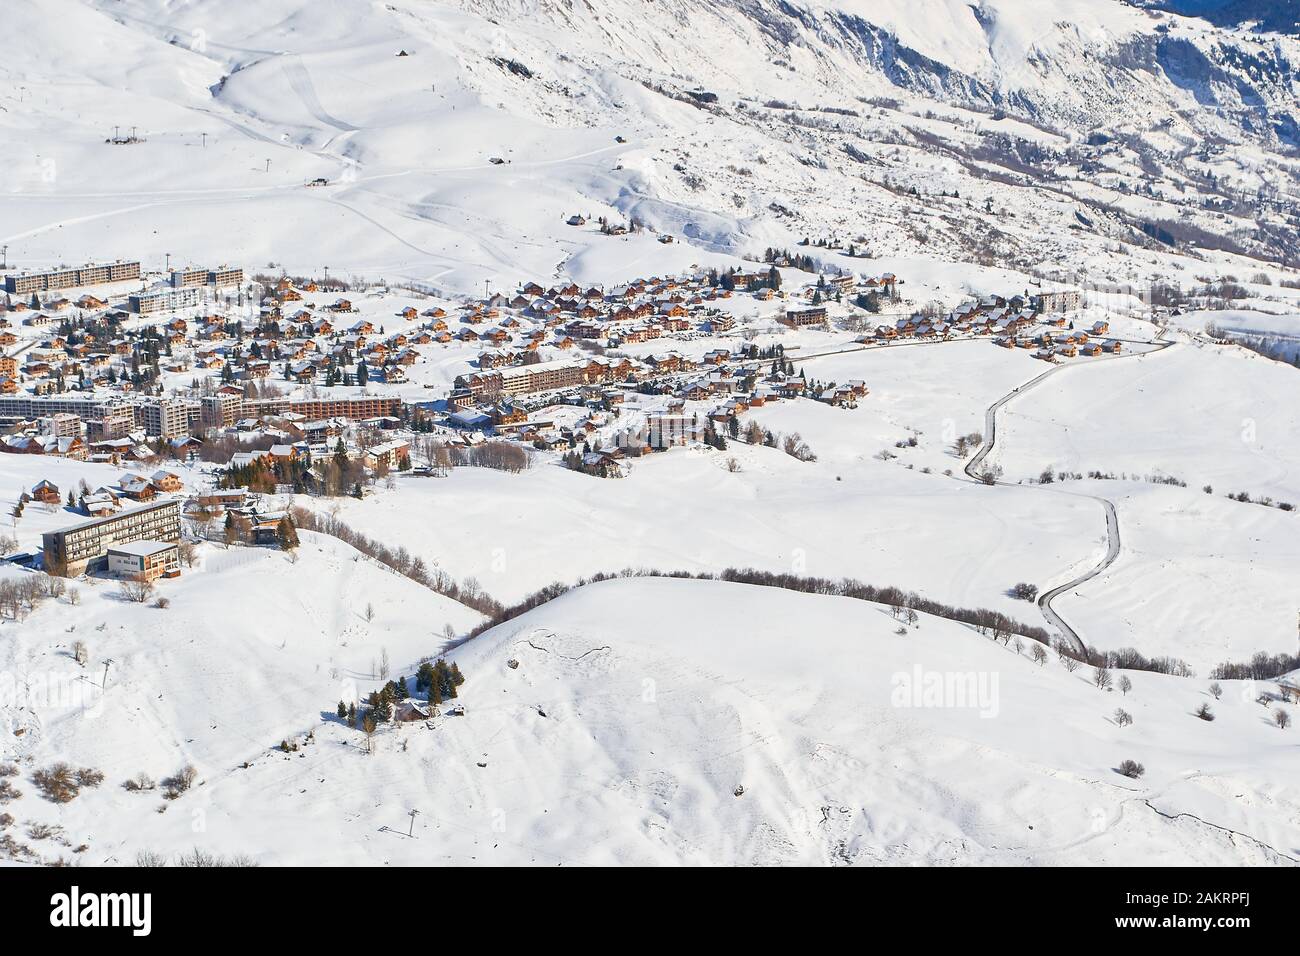 Le village de montagne de la Toussuire, vu de haut en haut de la montagne, dans le domaine skiable des Sybelles. Vue sur l'hiver le jour ensoleillé. Banque D'Images